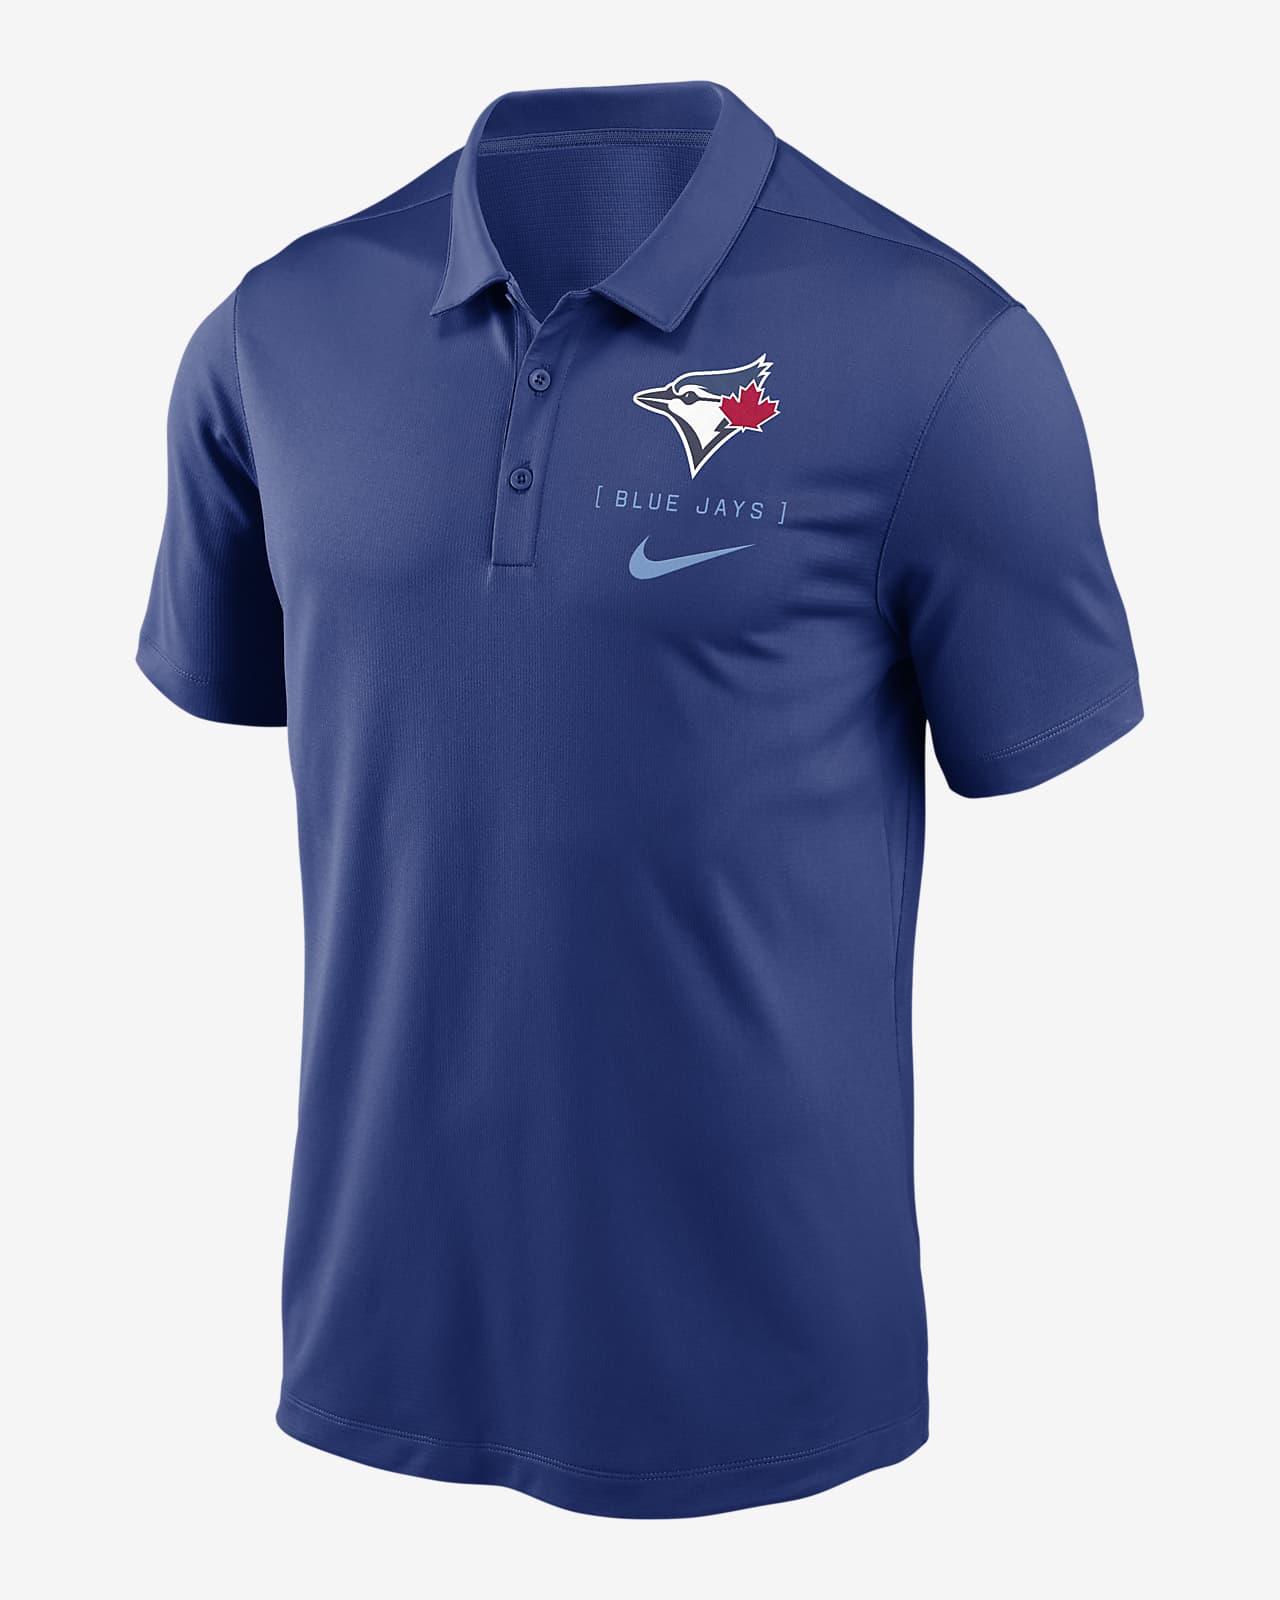 Toronto Blue Jays Franchise Logo Men's Nike Dri-FIT MLB Polo